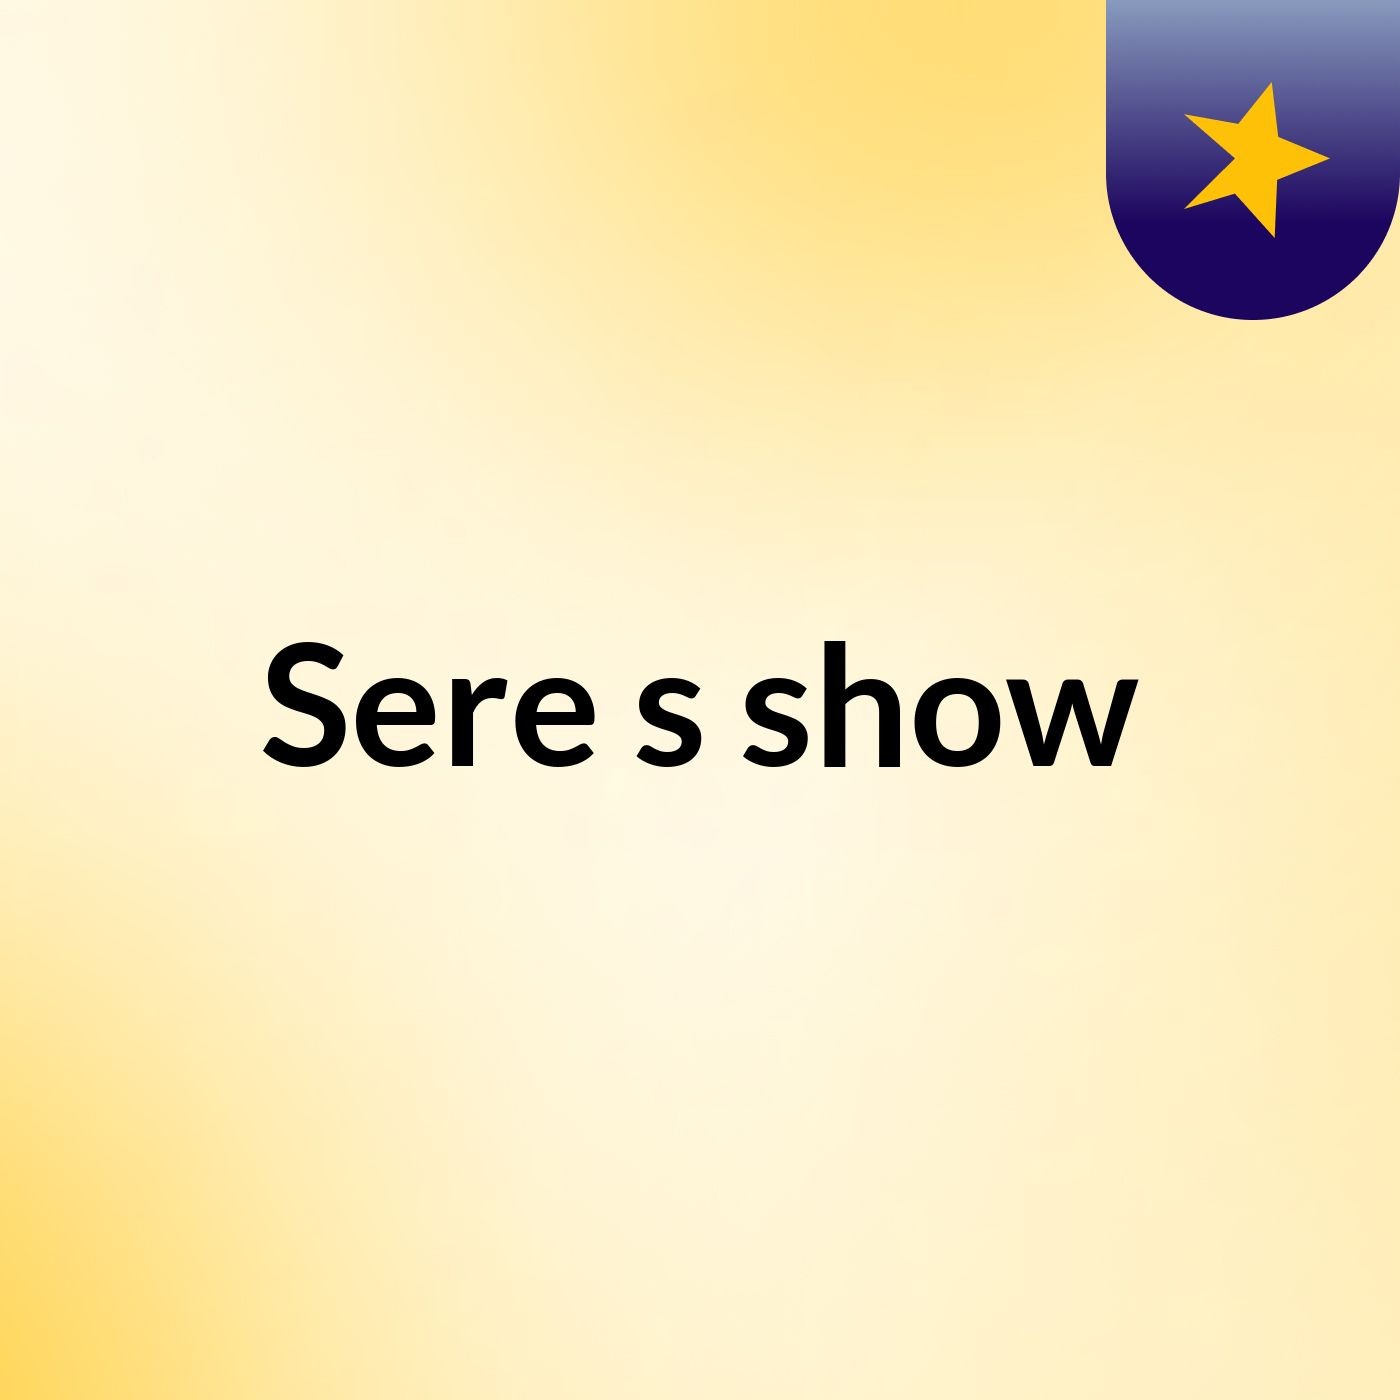 Sere's show